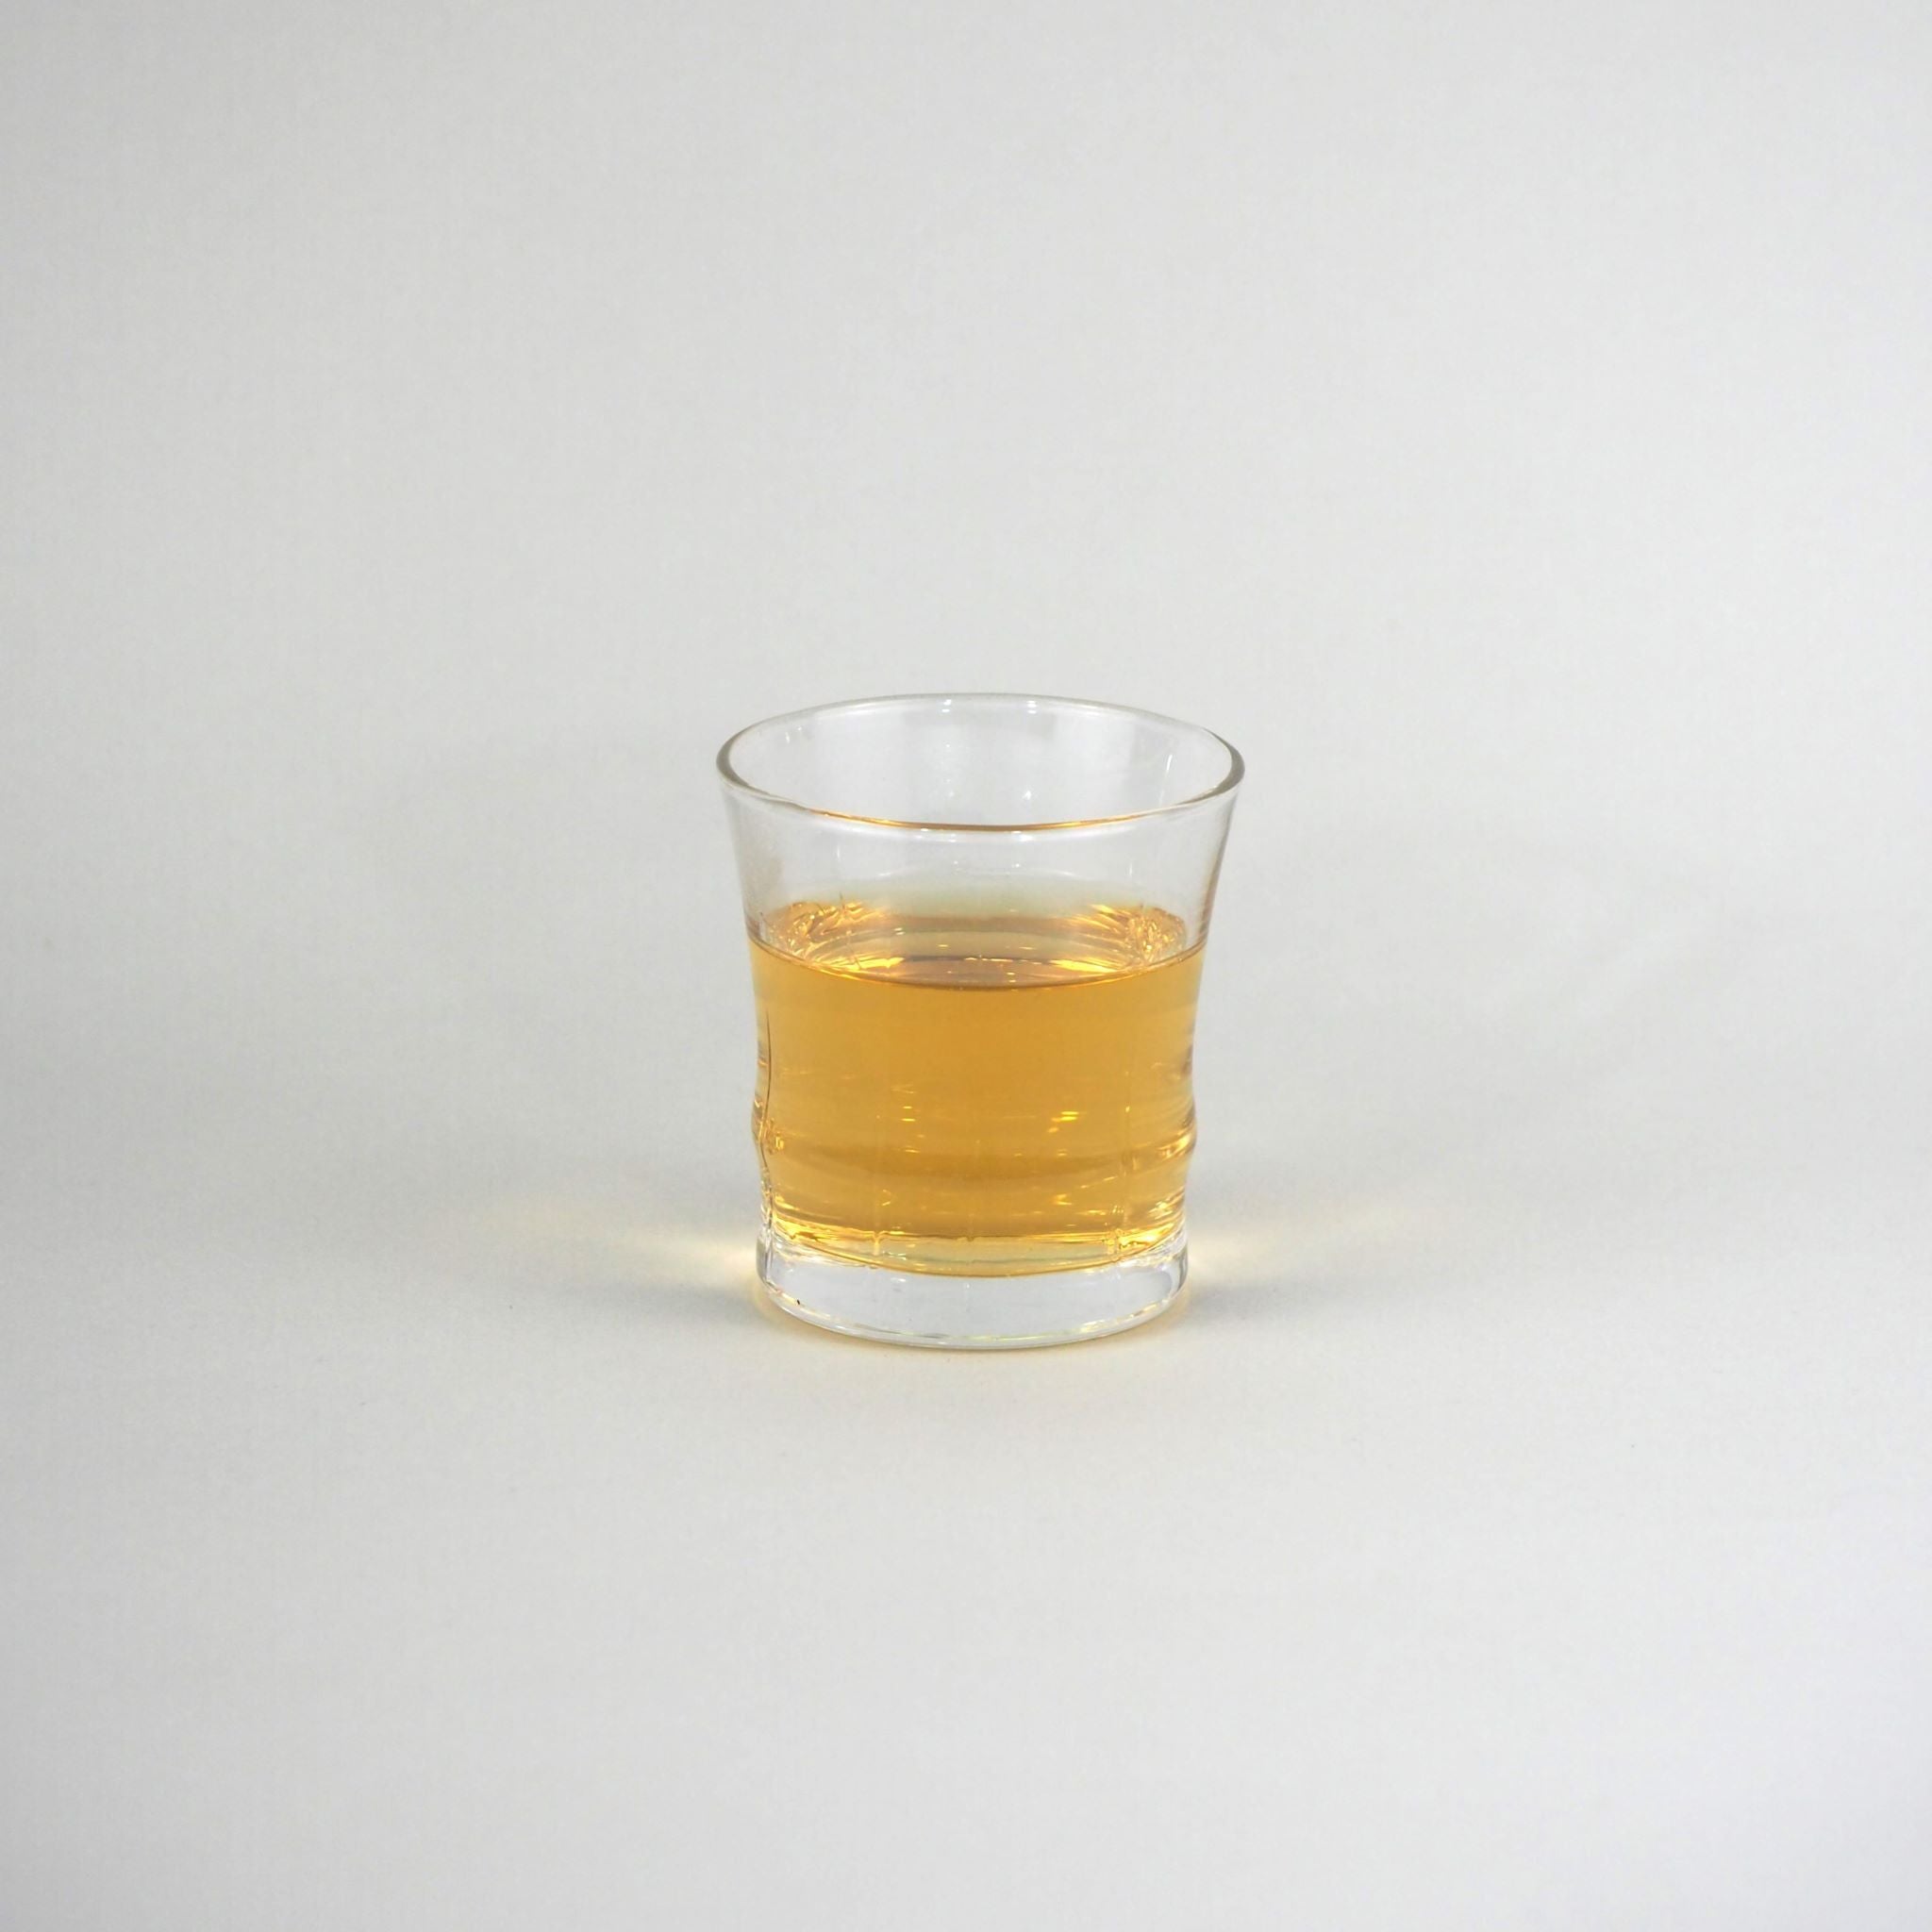 高千穂ほうじ茶を実際に淹れた、お茶の色の画像です。お茶の色は、透明な明るい茶色です。